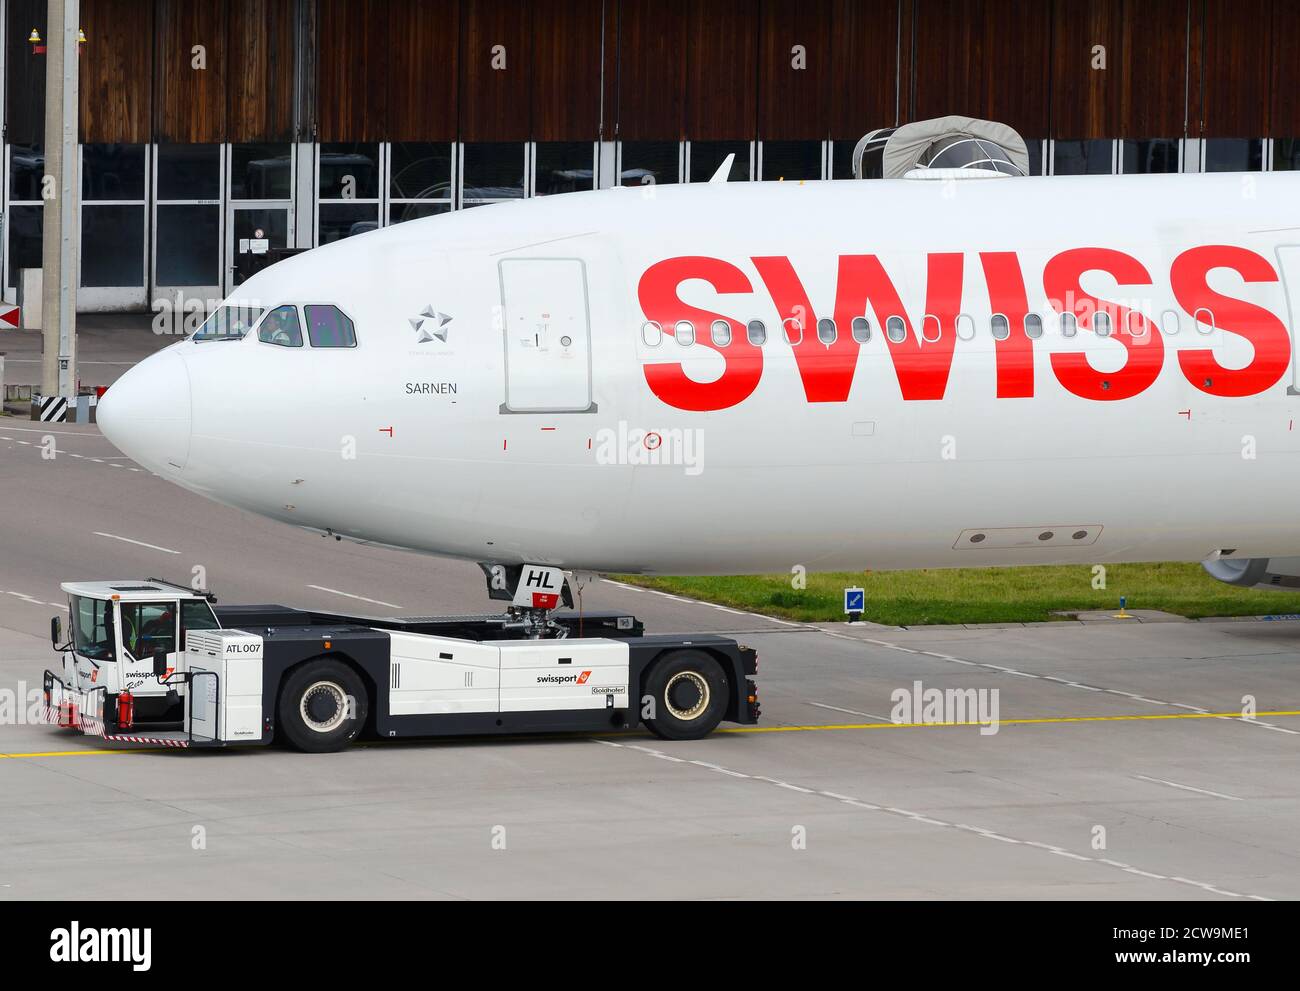 Swiss Airlines Airbus A330 während des Rückfahrens mit Goldhofer AST-1X Traktor. Betrieb von Zugfahrzeugen ohne Zugvorrichtung am Flughafen Zürich-Kloten. Flugzeugschlepper Stockfoto